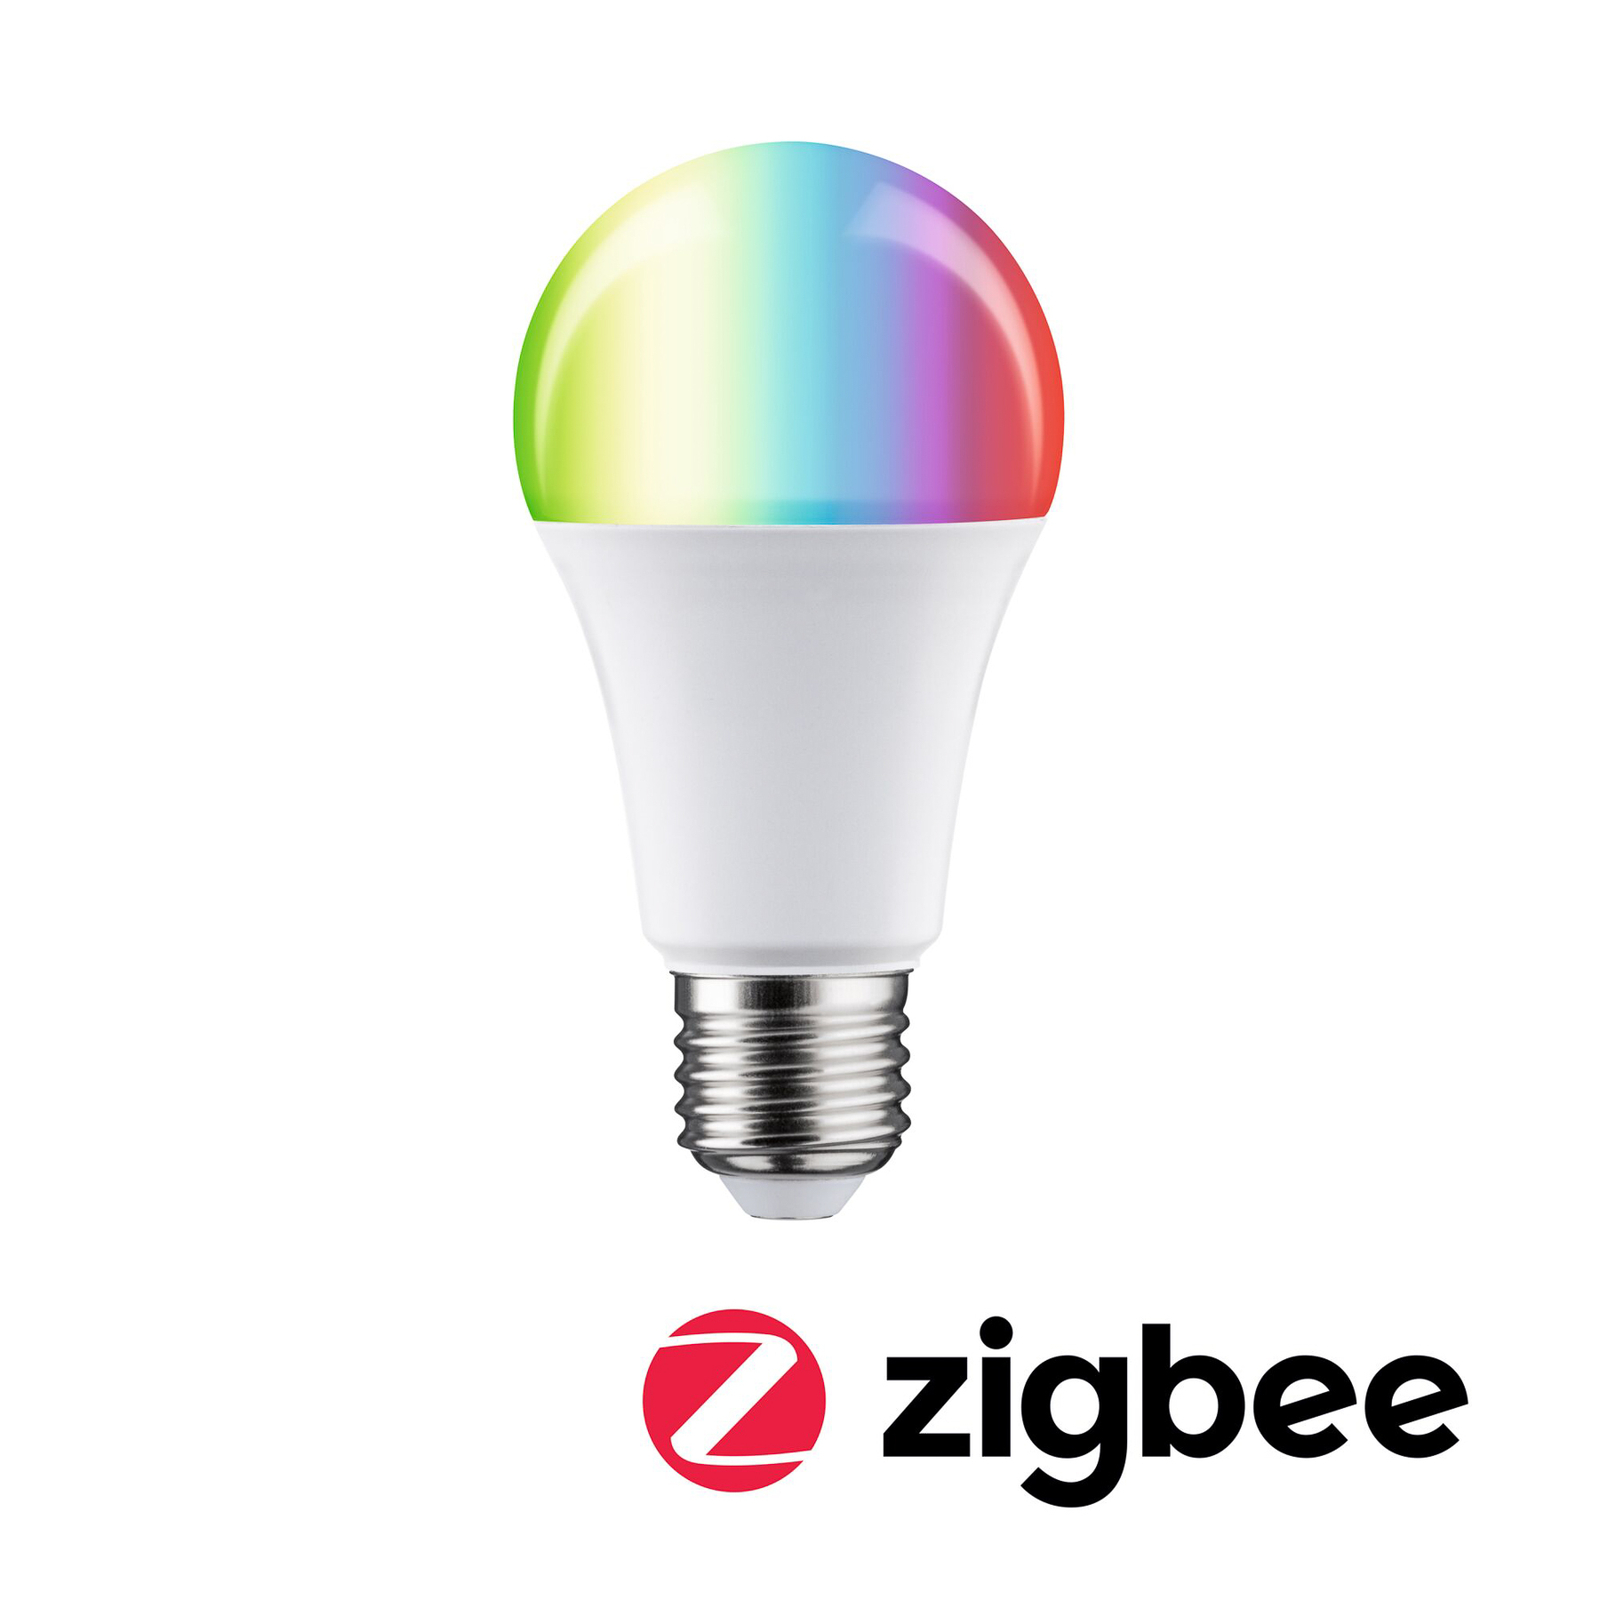 Paulmann ampoule LED E27 9 W 806 lm ZigBee RGBW